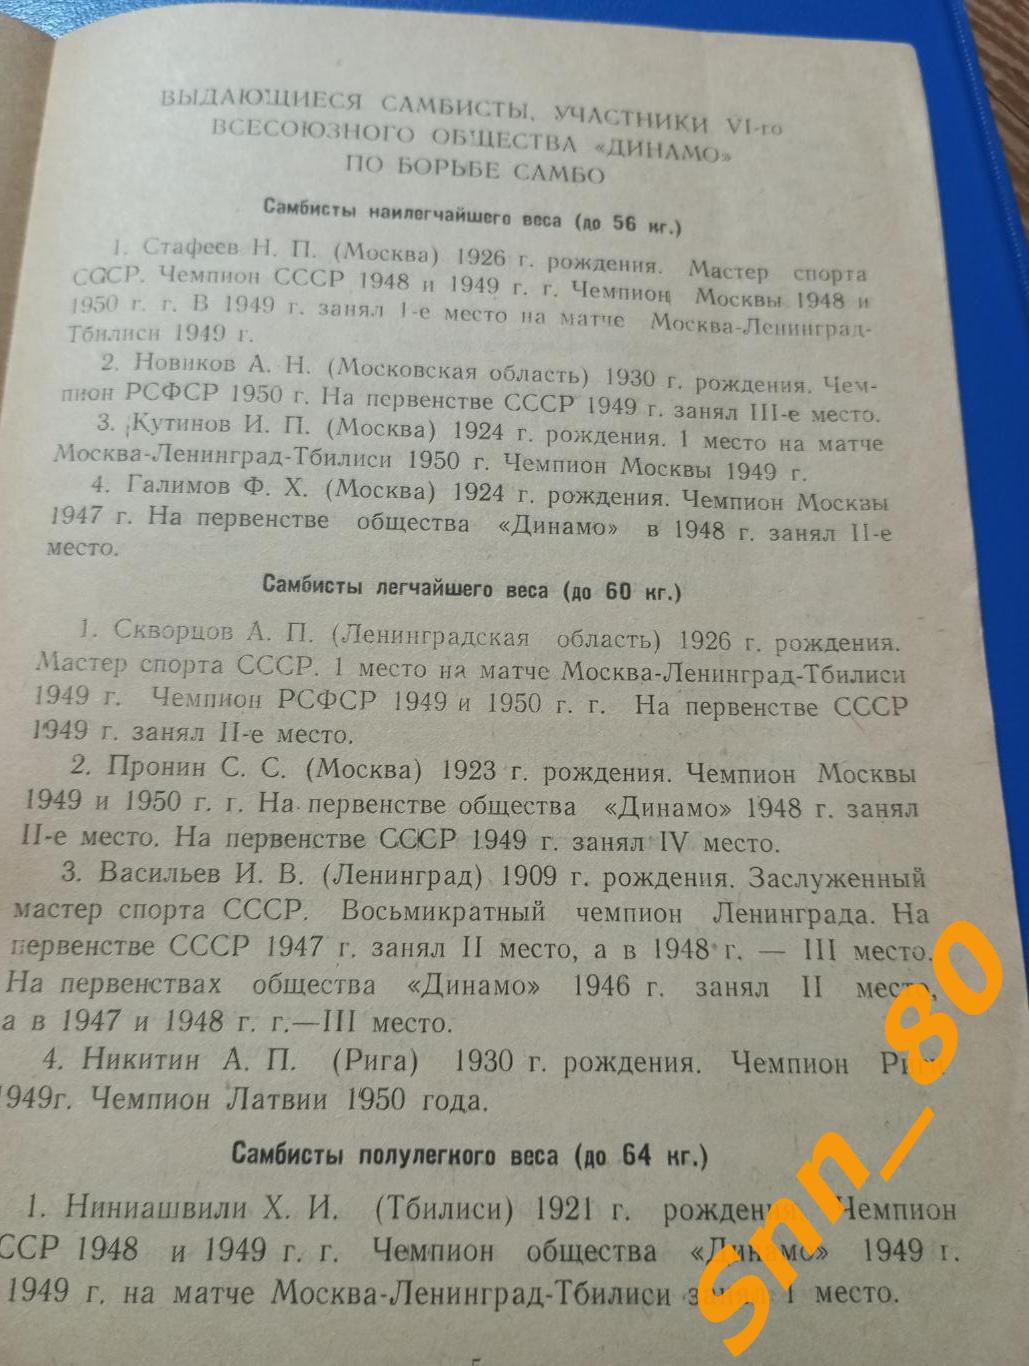 Борьба самбо 6-е Всесоюзное лично-командное первенство обществ Динамо 1950 Минск 3